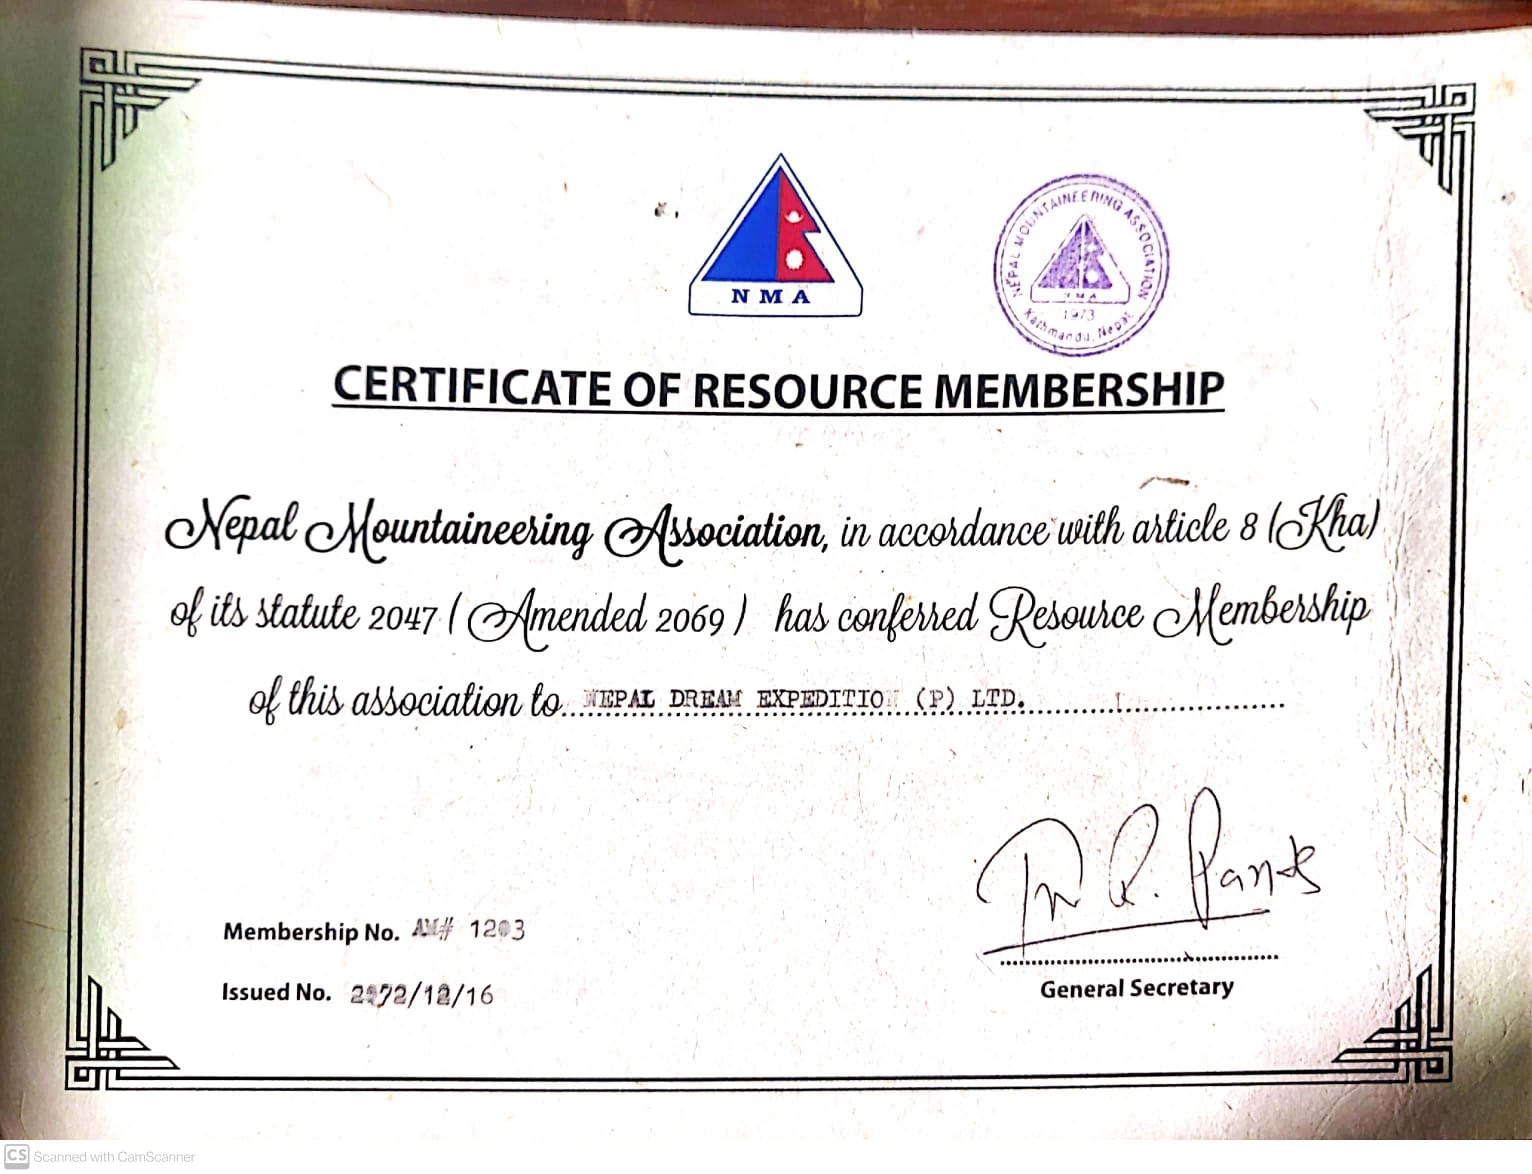 Certificate of Resource Membership